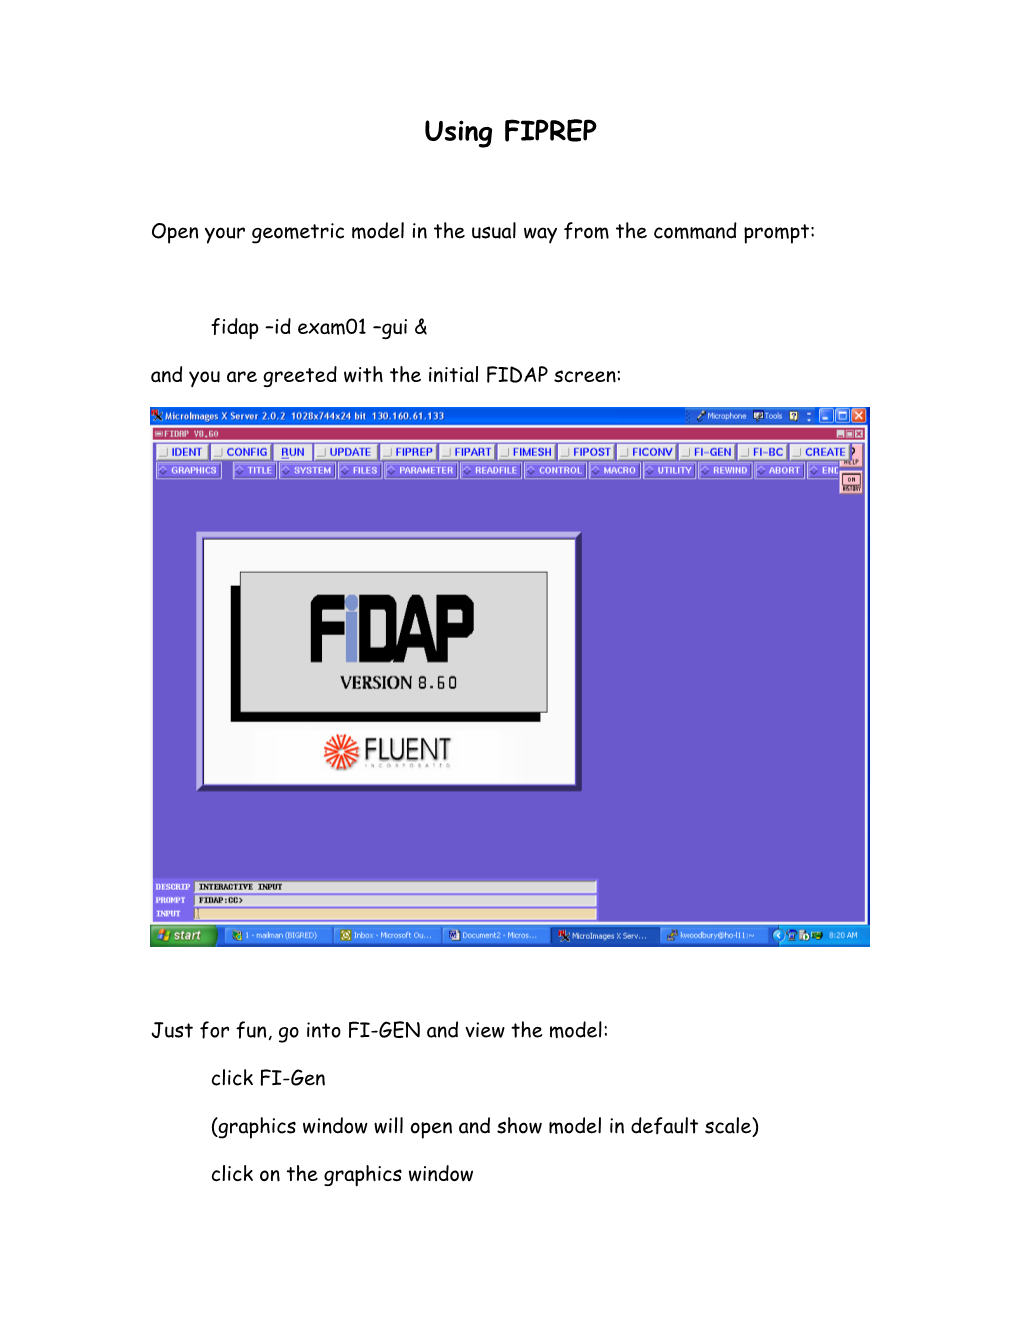 Remote Access of FIDAP